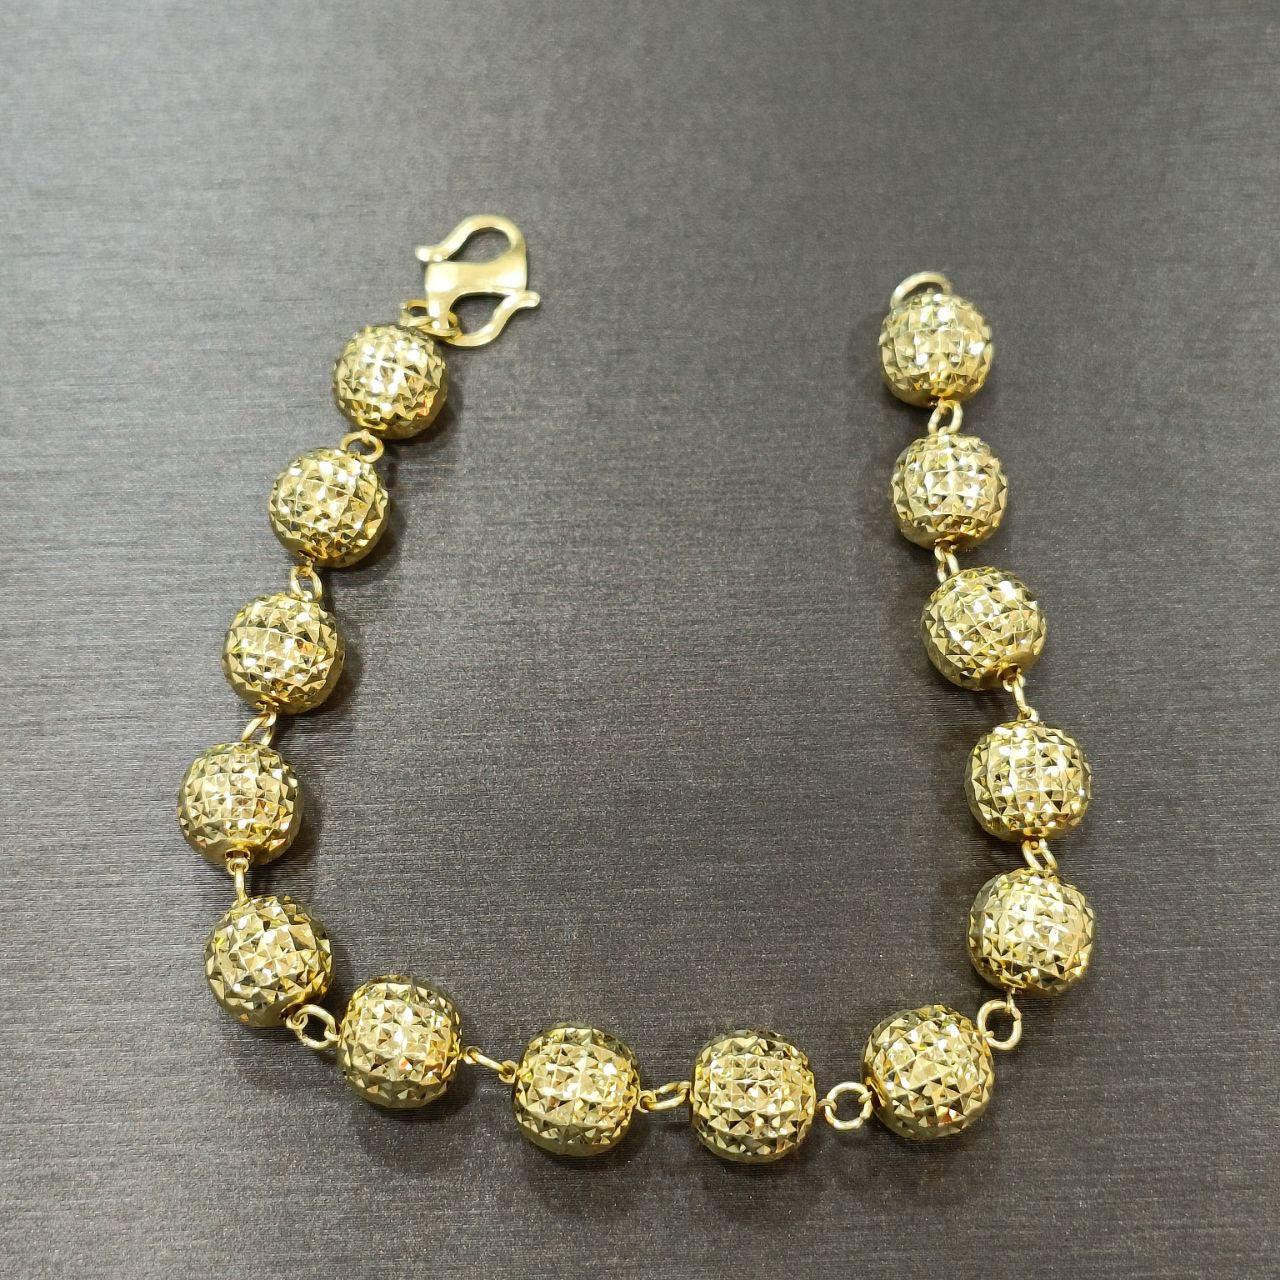 22k / 916 Gold Ball Bracelet V4-916 gold-Best Gold Shop